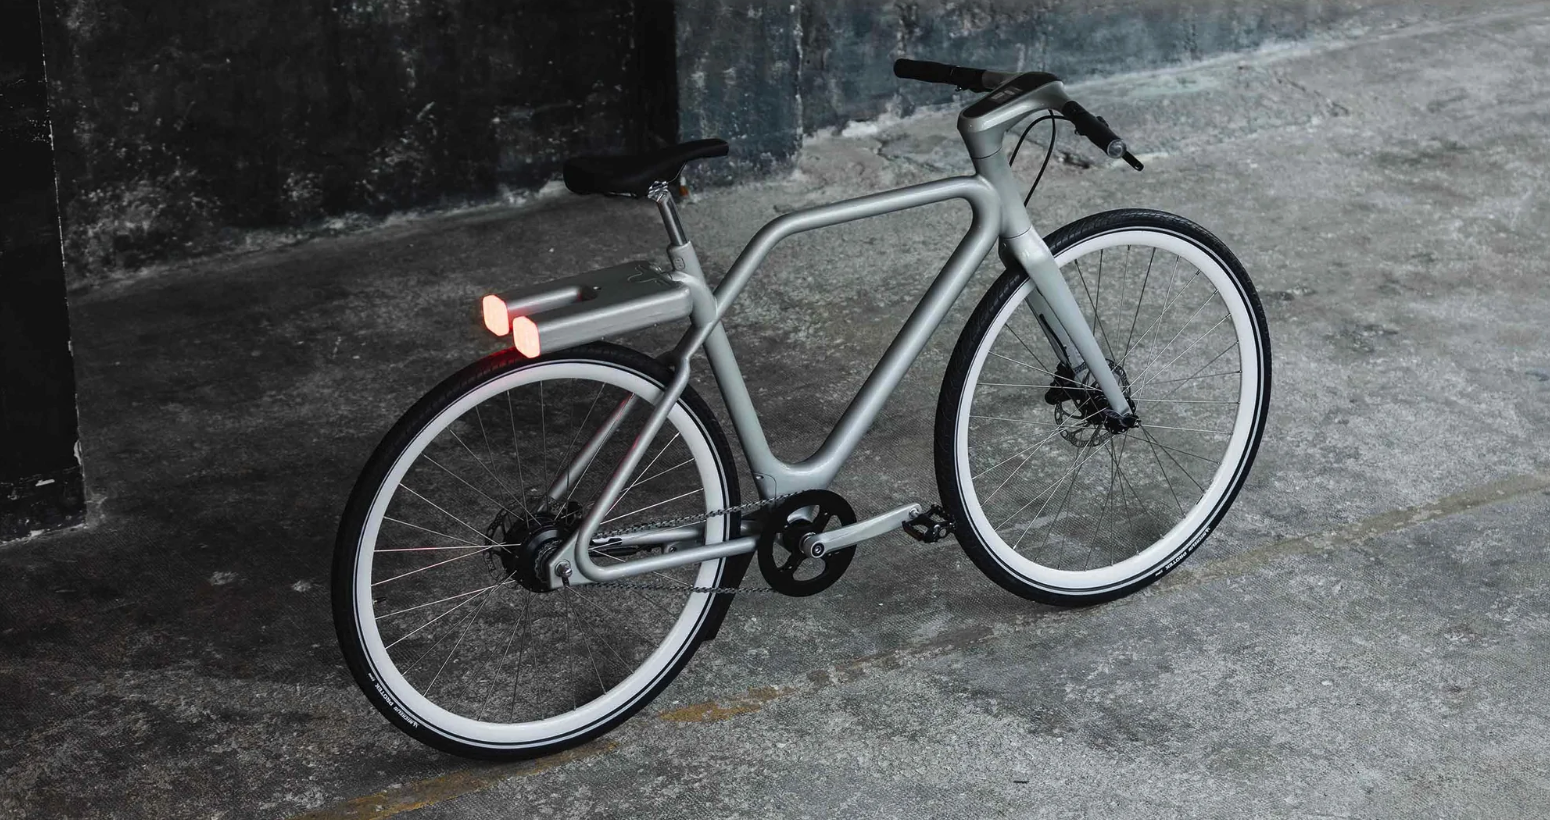 Mini lance avec Angell une gamme de vélos électriques produits en France